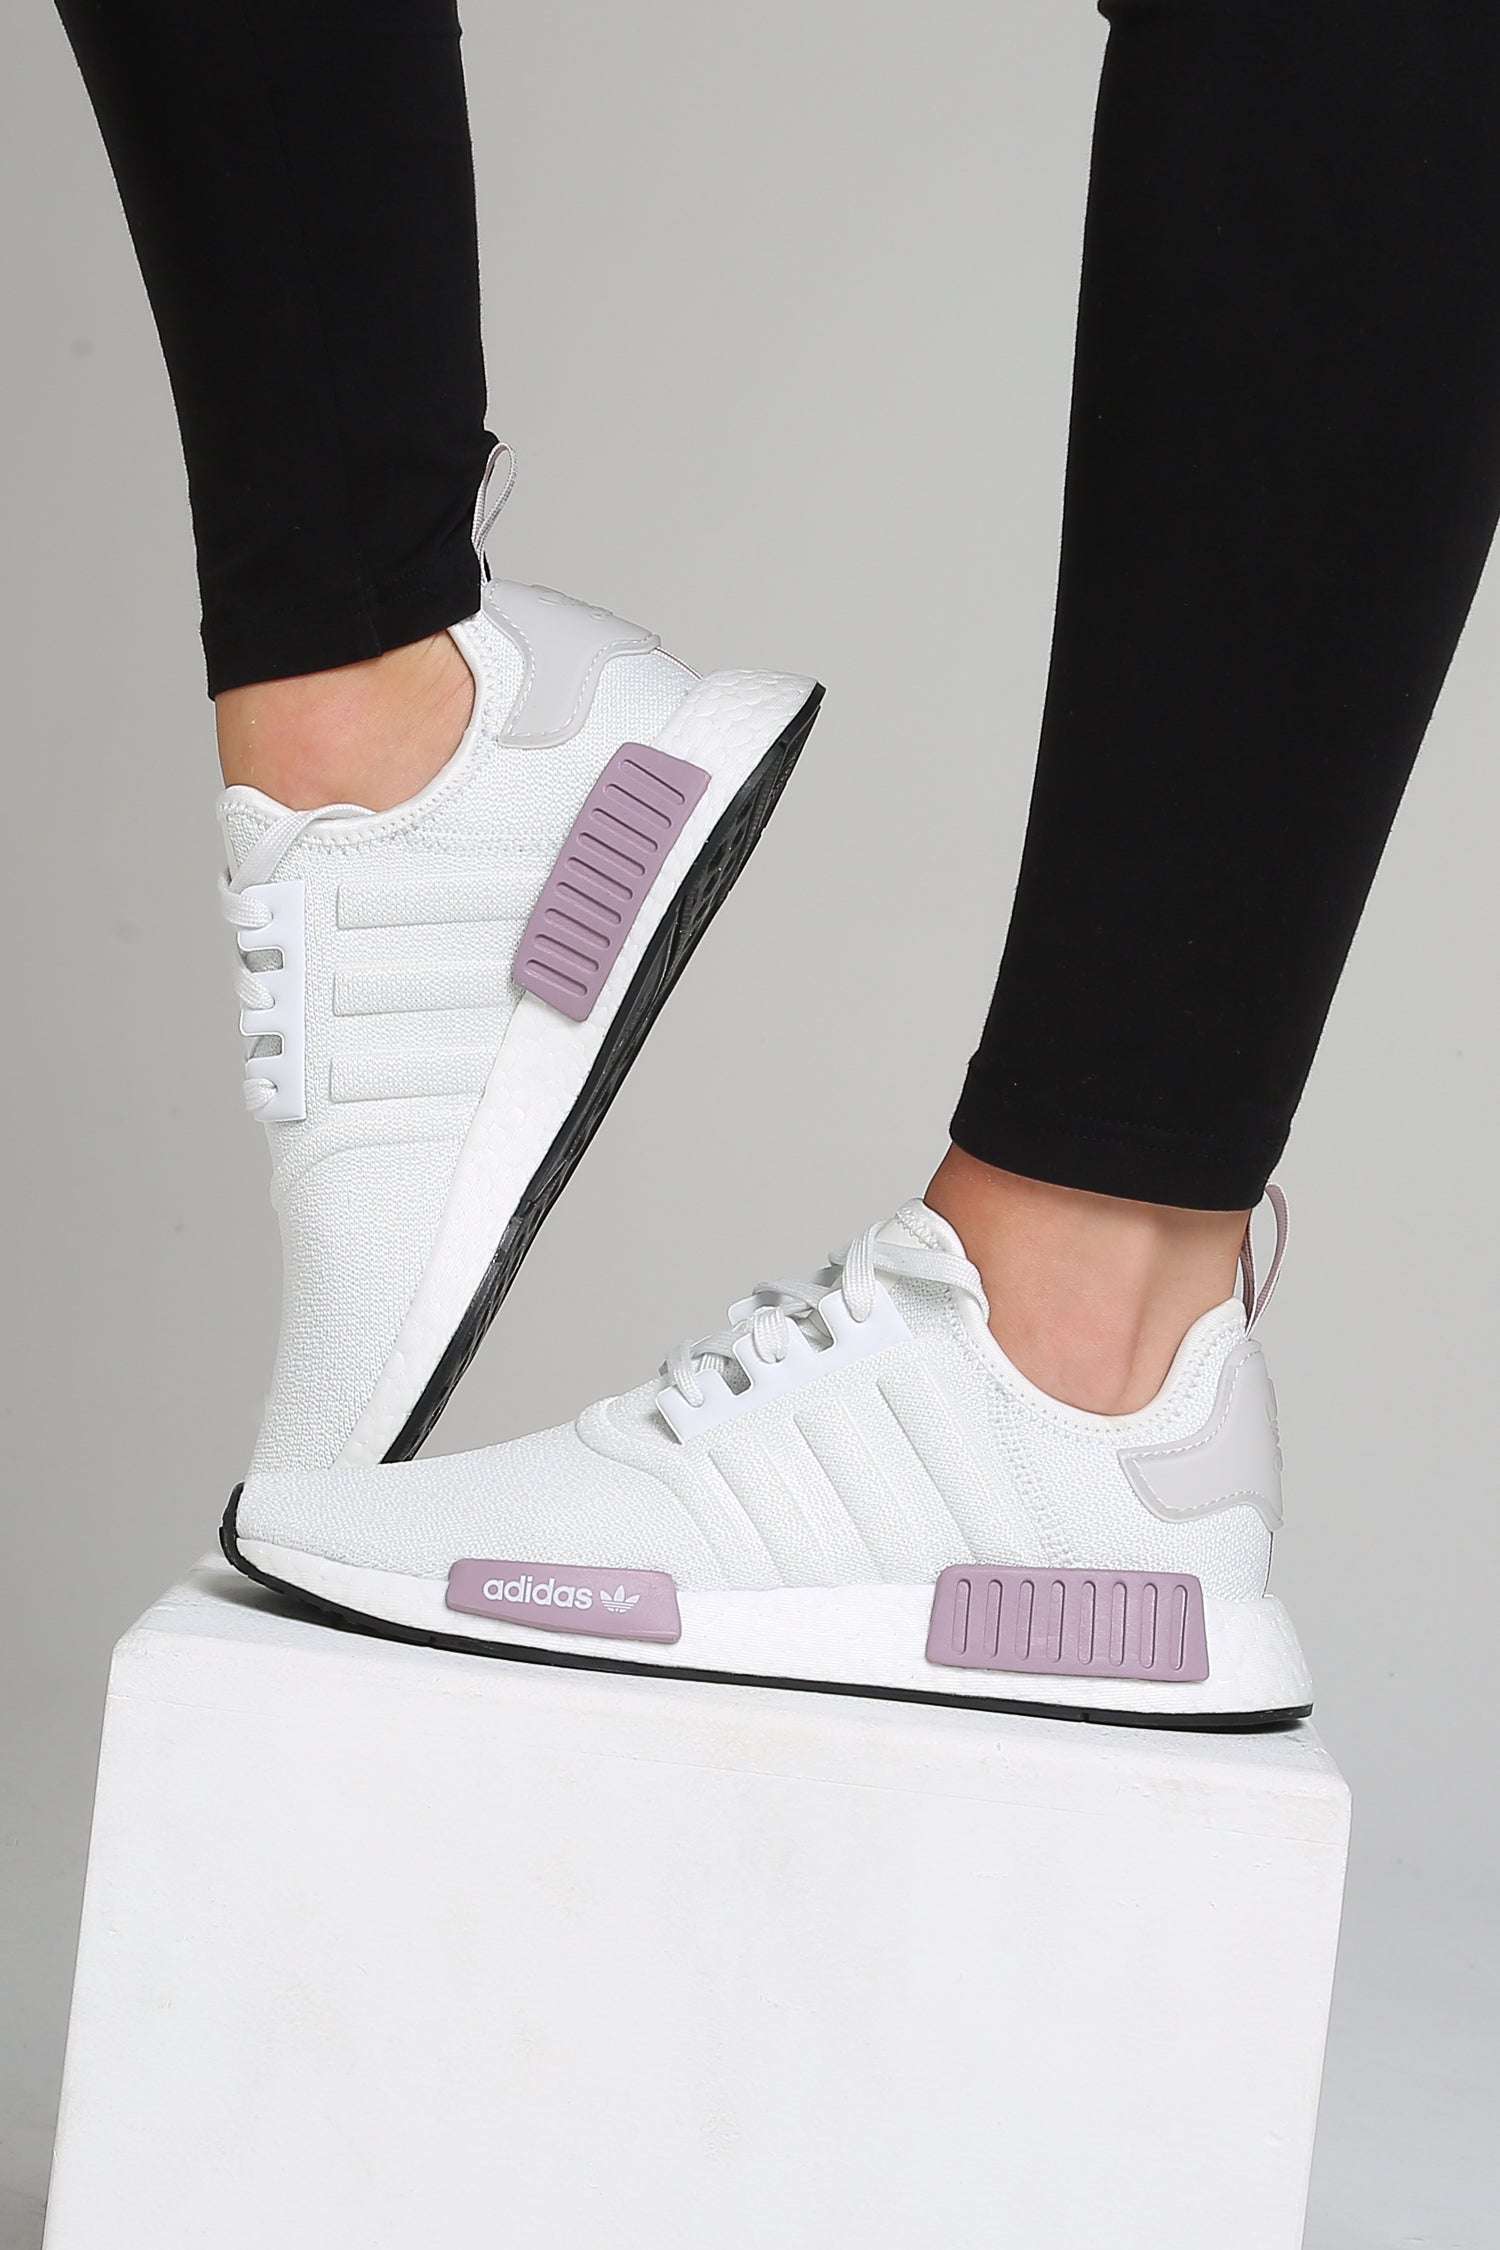 adidas nmd white purple